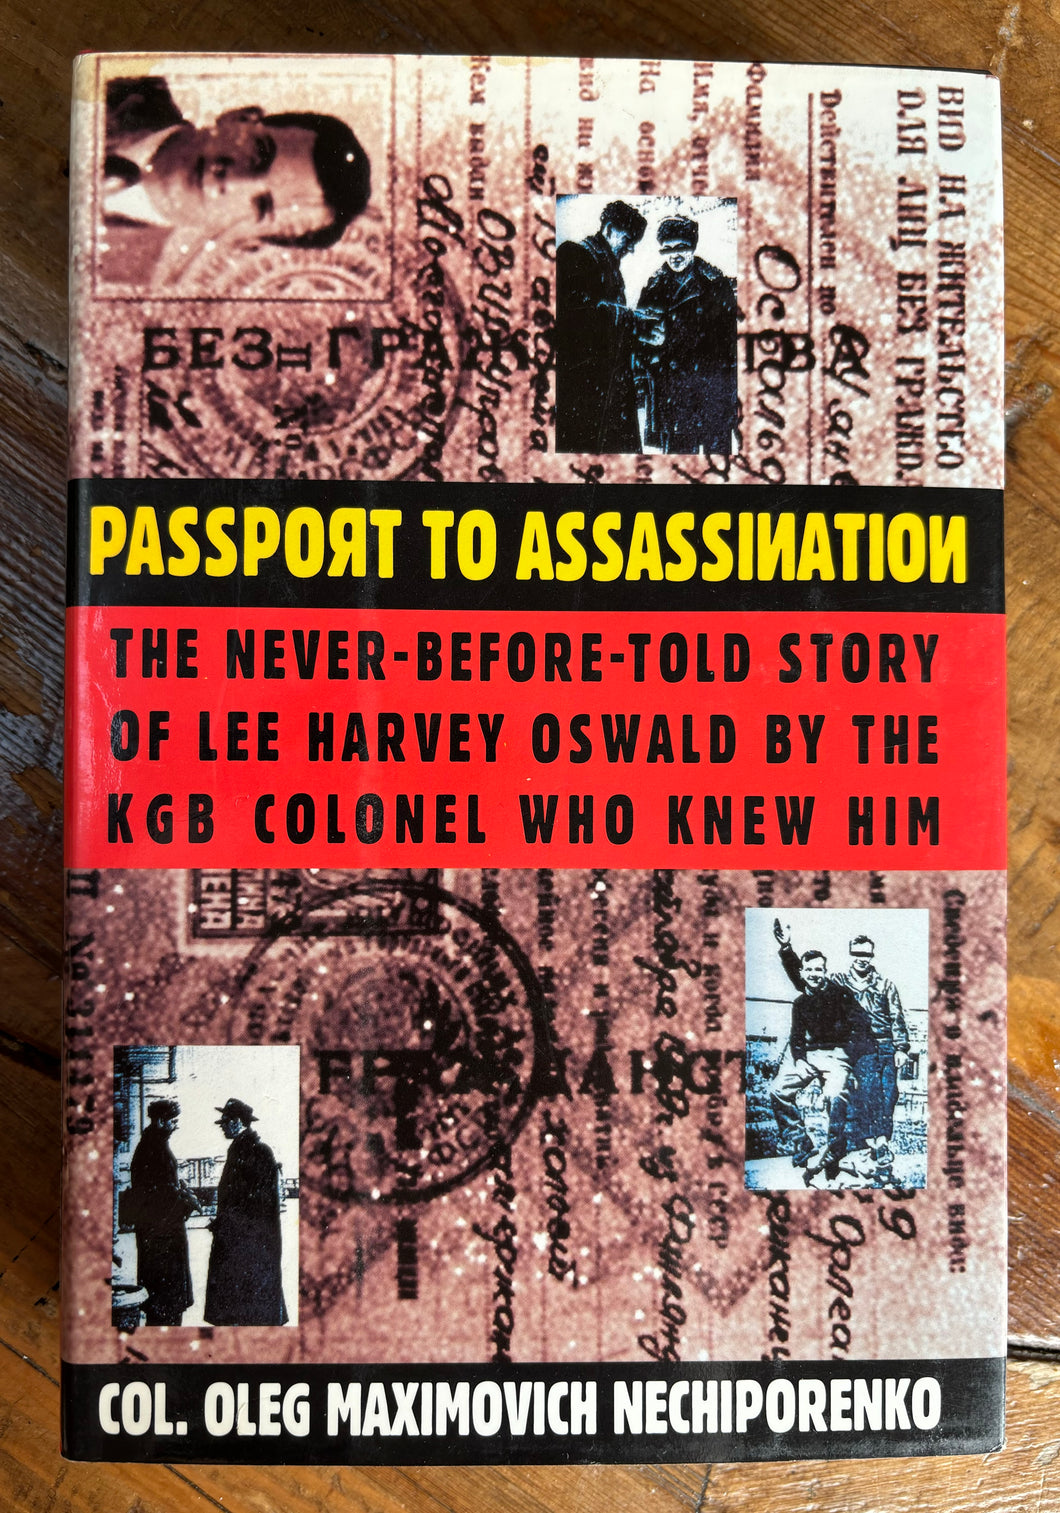 Passport To Assassination